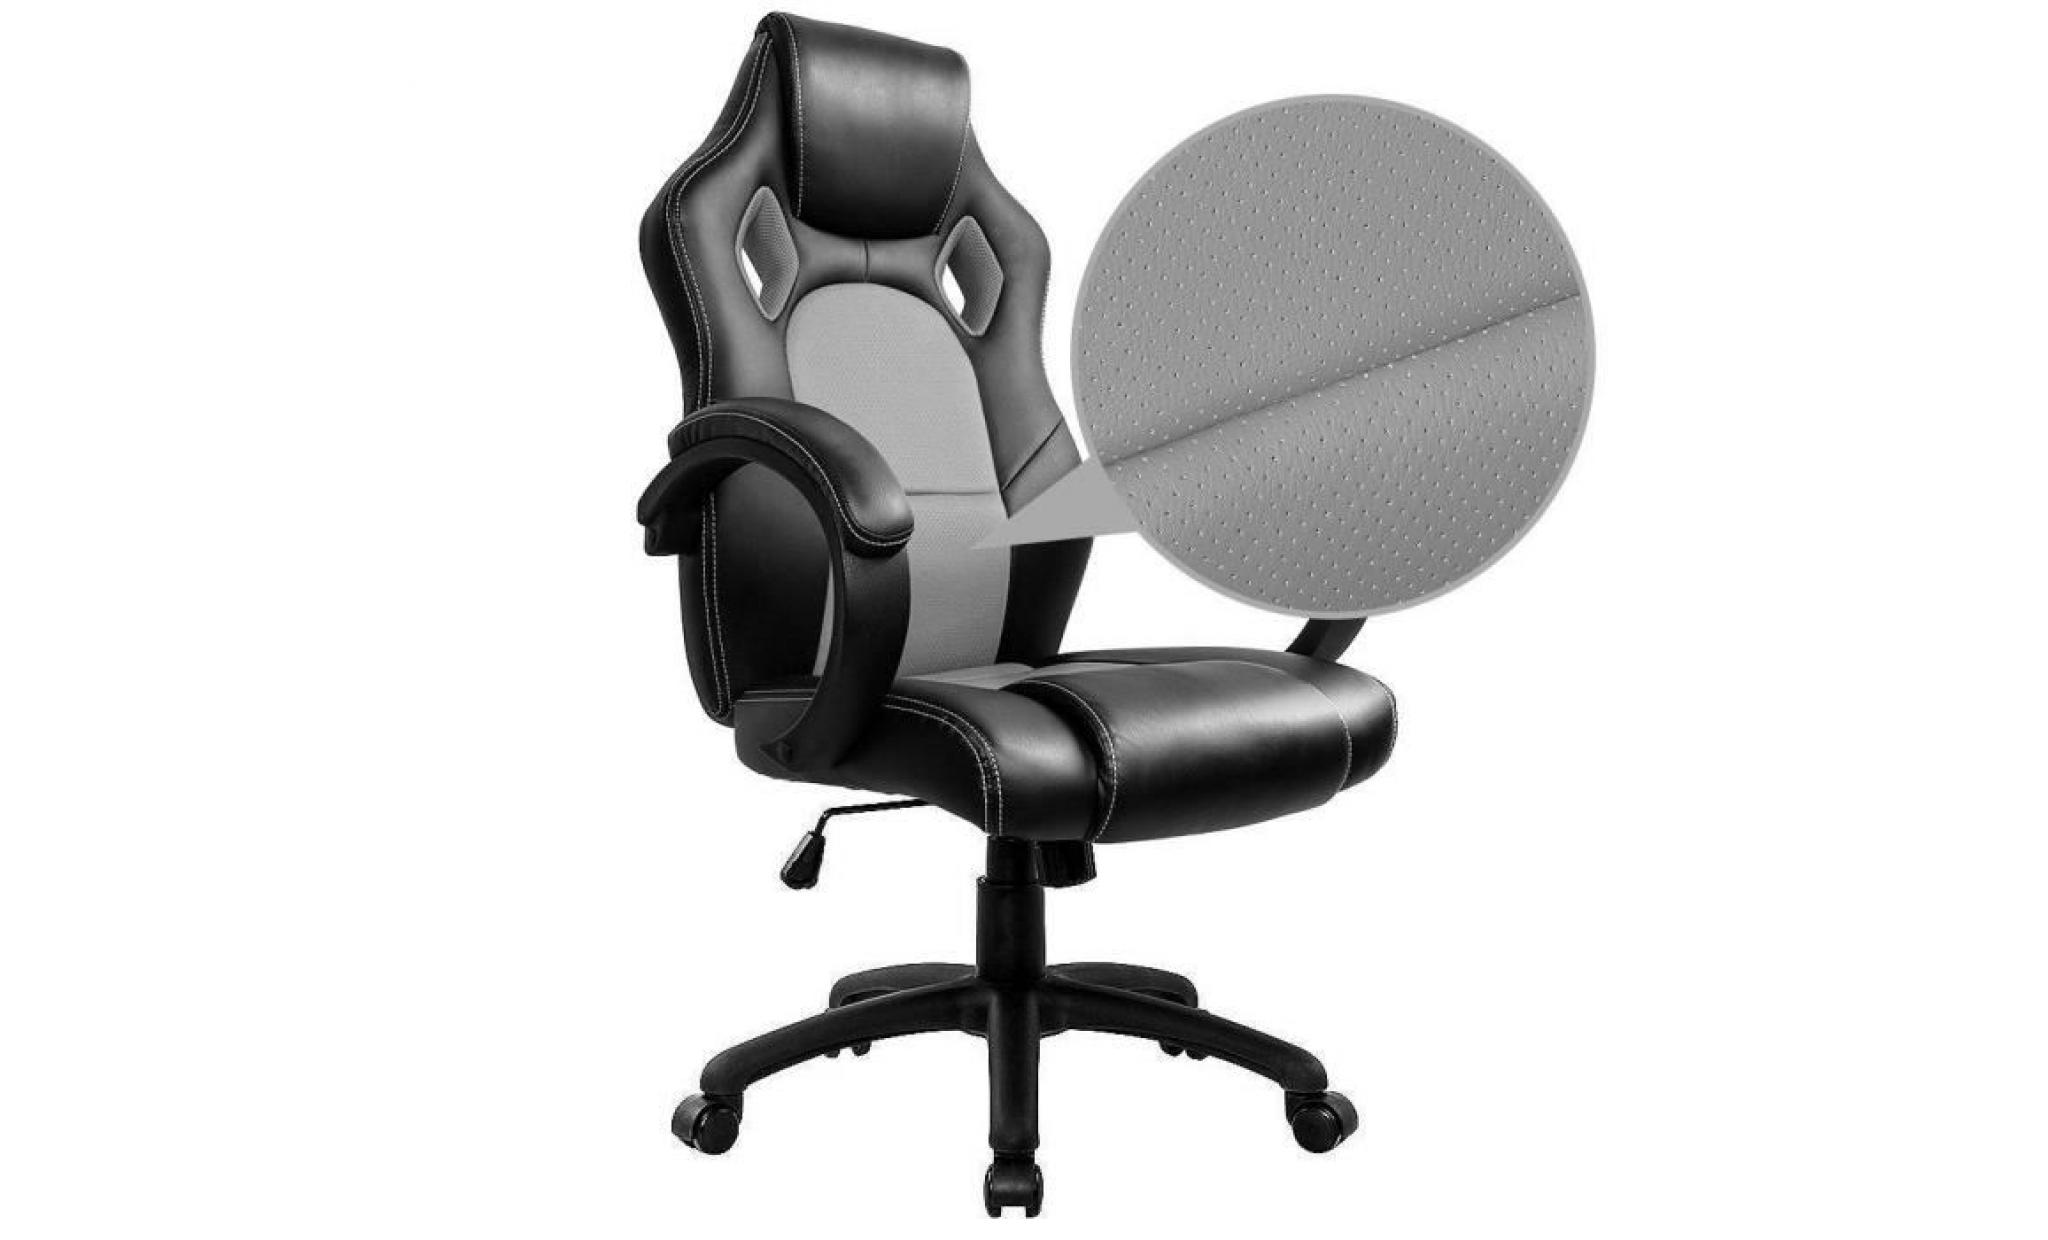 chaise de bureau fauteuil de bureau   moderne confortable ergonomique en similicuir pu   hauteur réglable   bleu   intimate wm heart pas cher